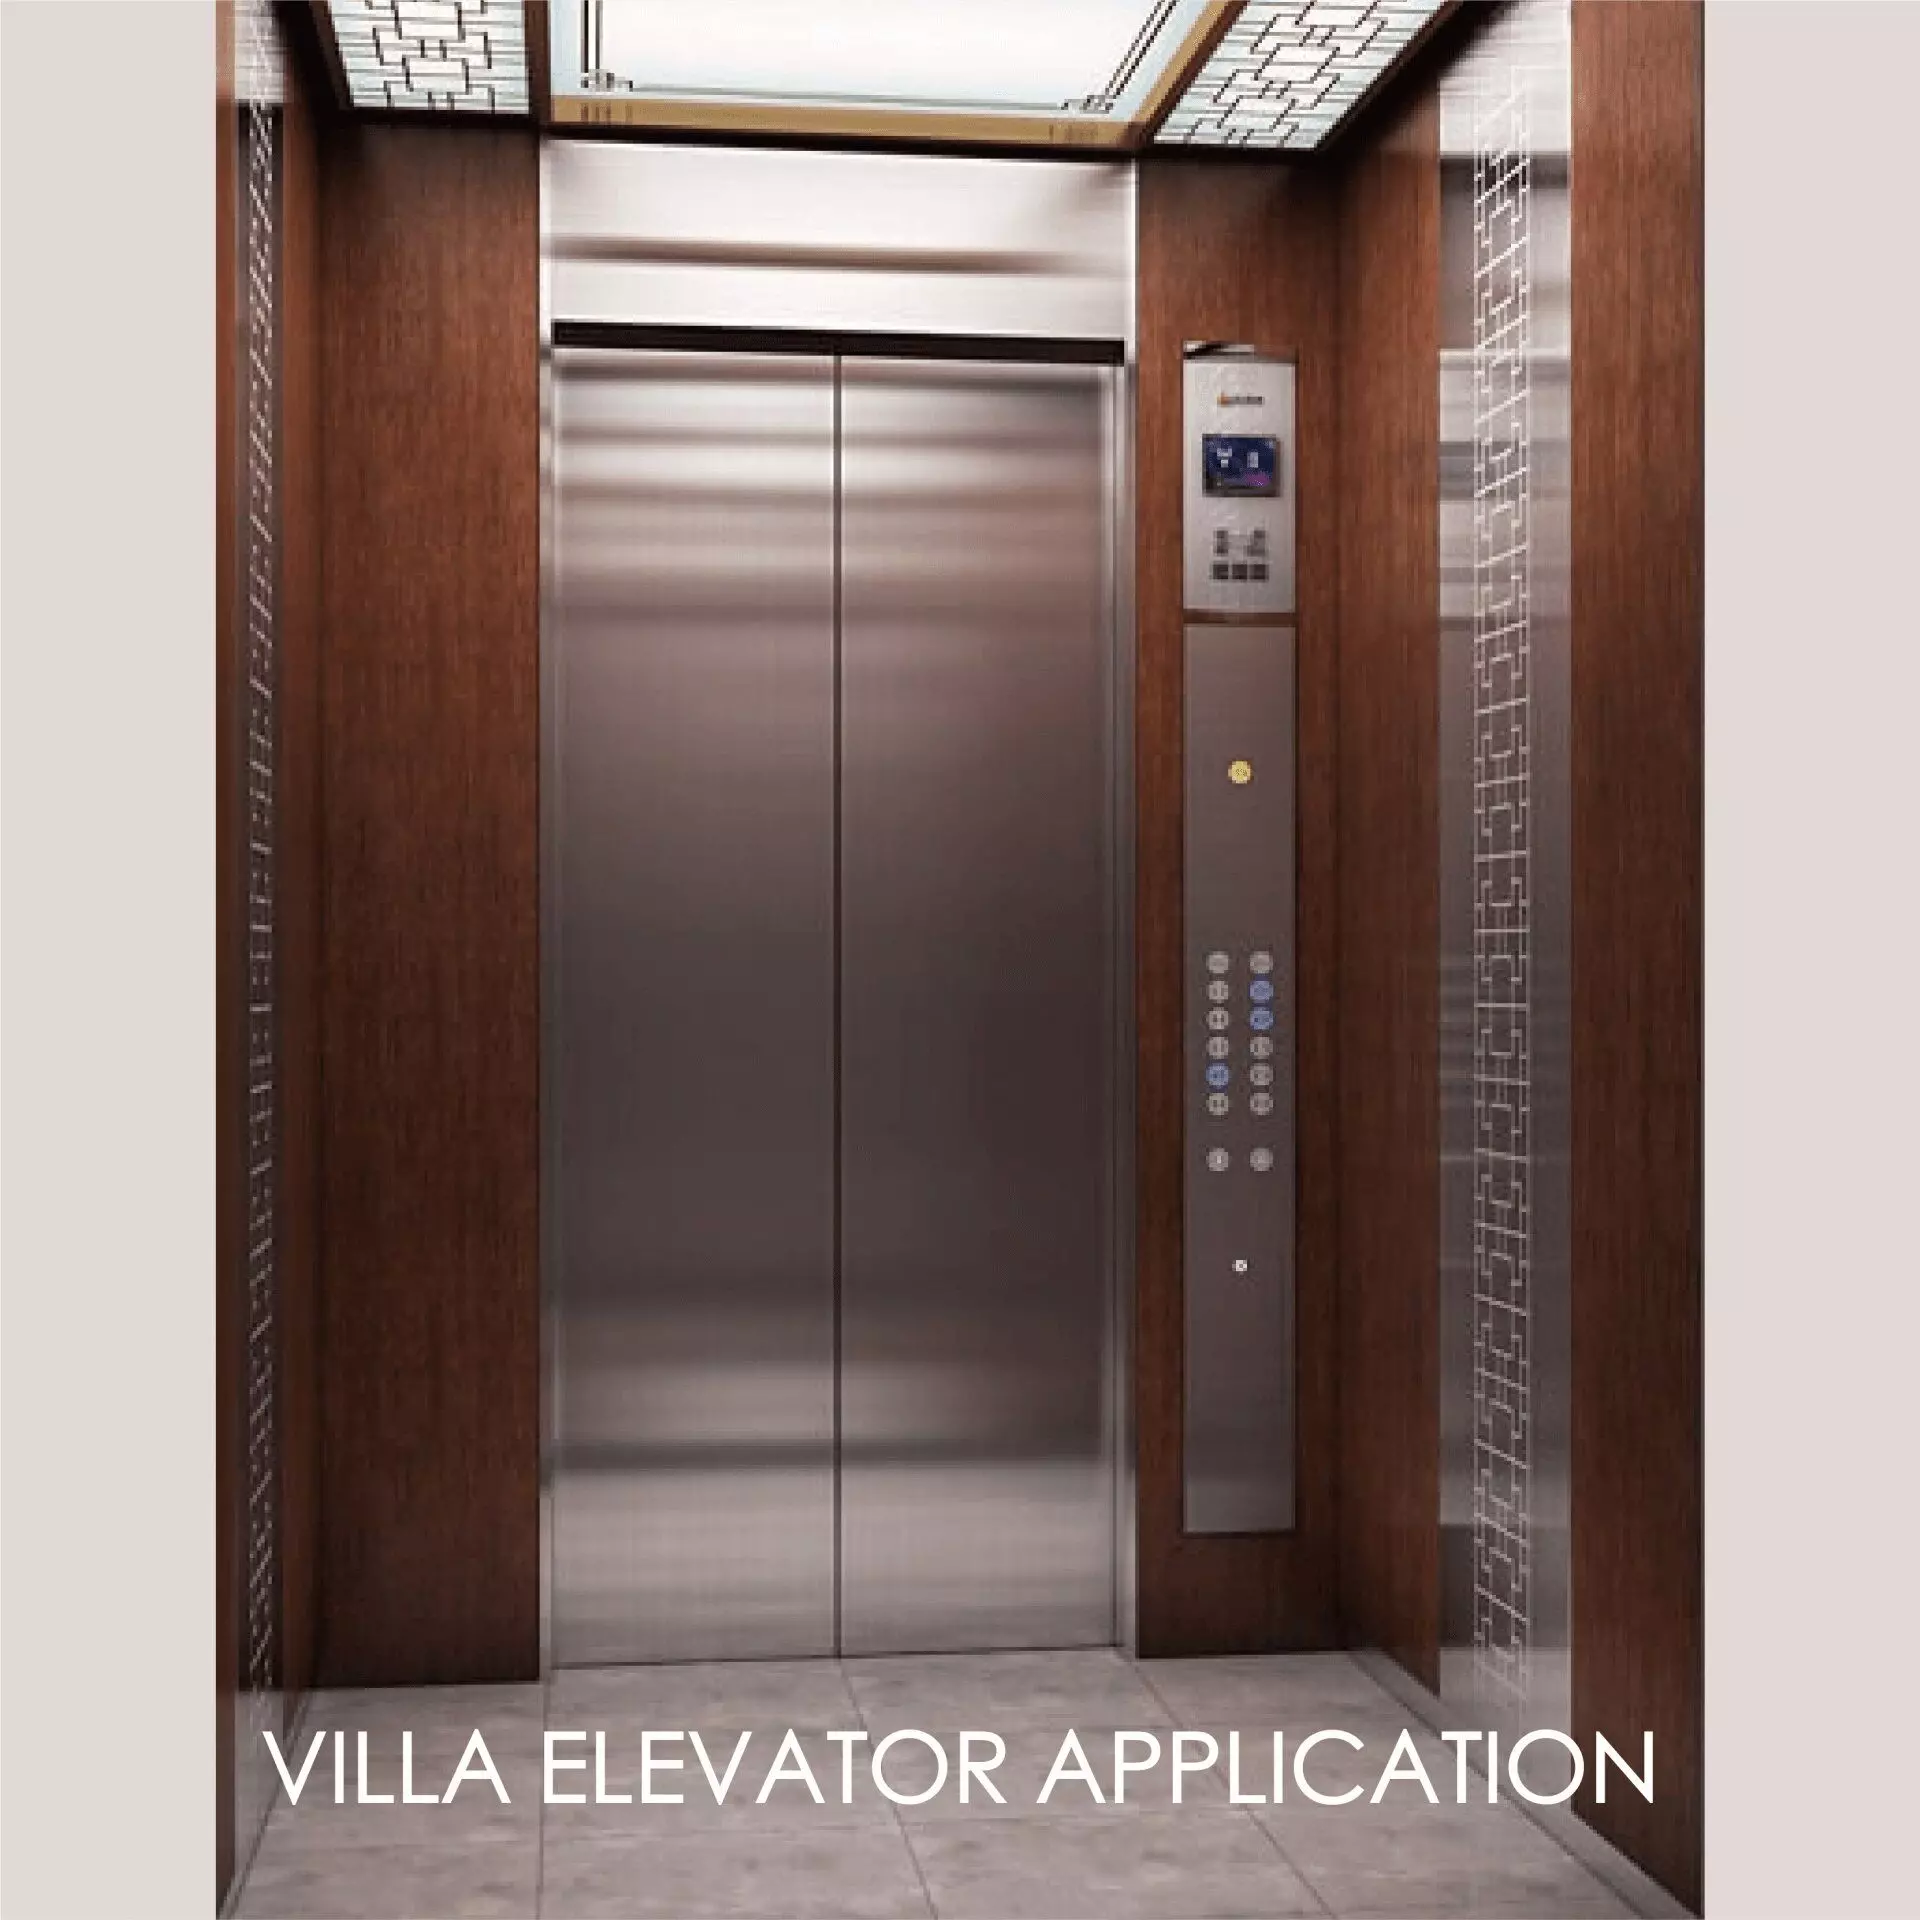 Asansör kapı panelini ve iç mekanı süslemek için laminatlı metal kullanmak, estetik ve dayanıklılık yaratabilir.